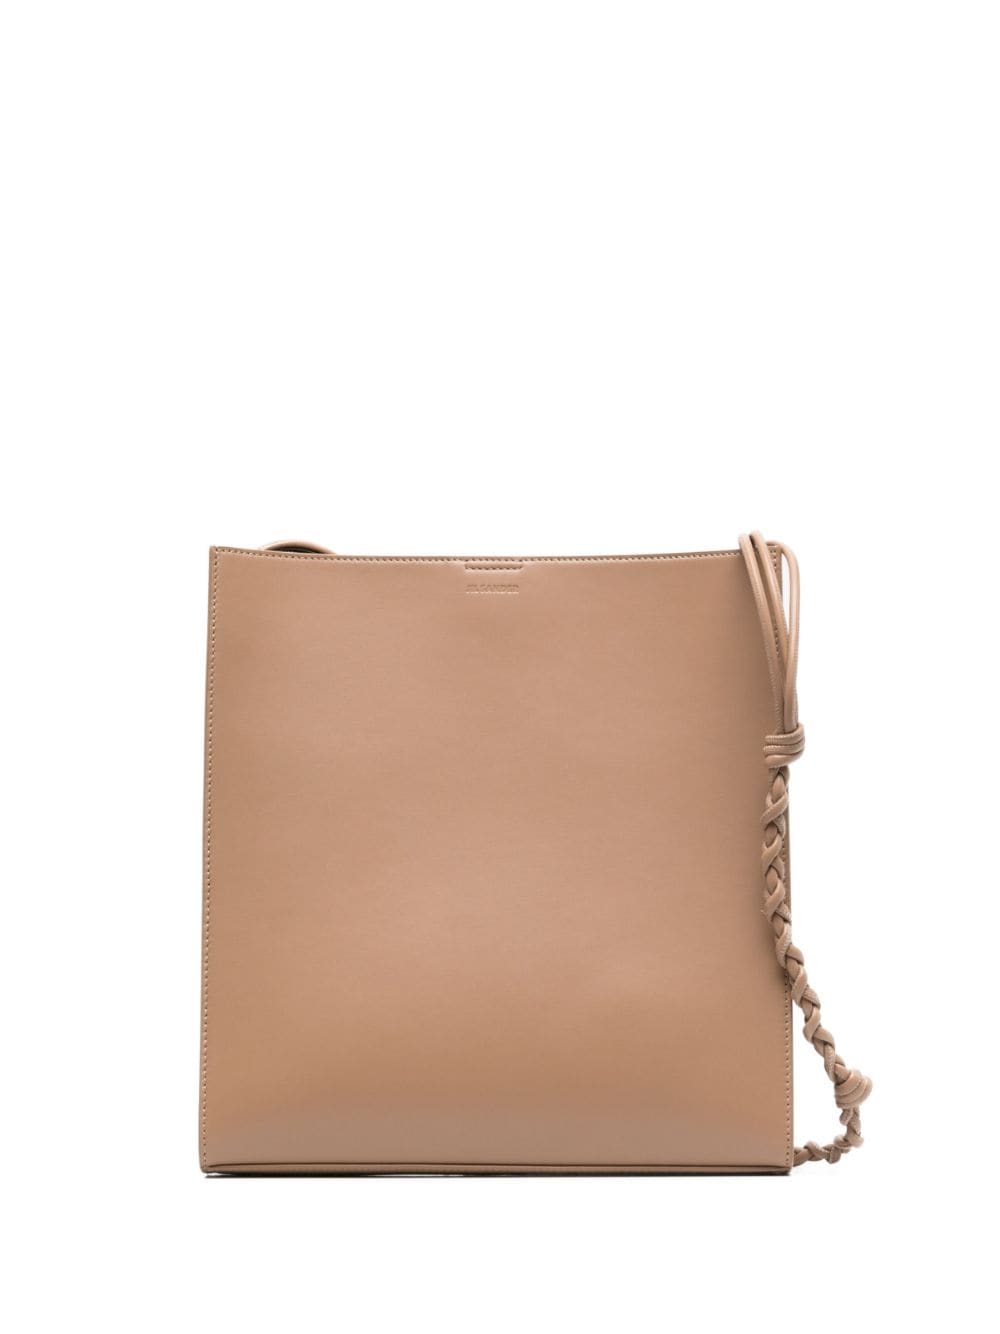 medium Tangle leather shoulder bag